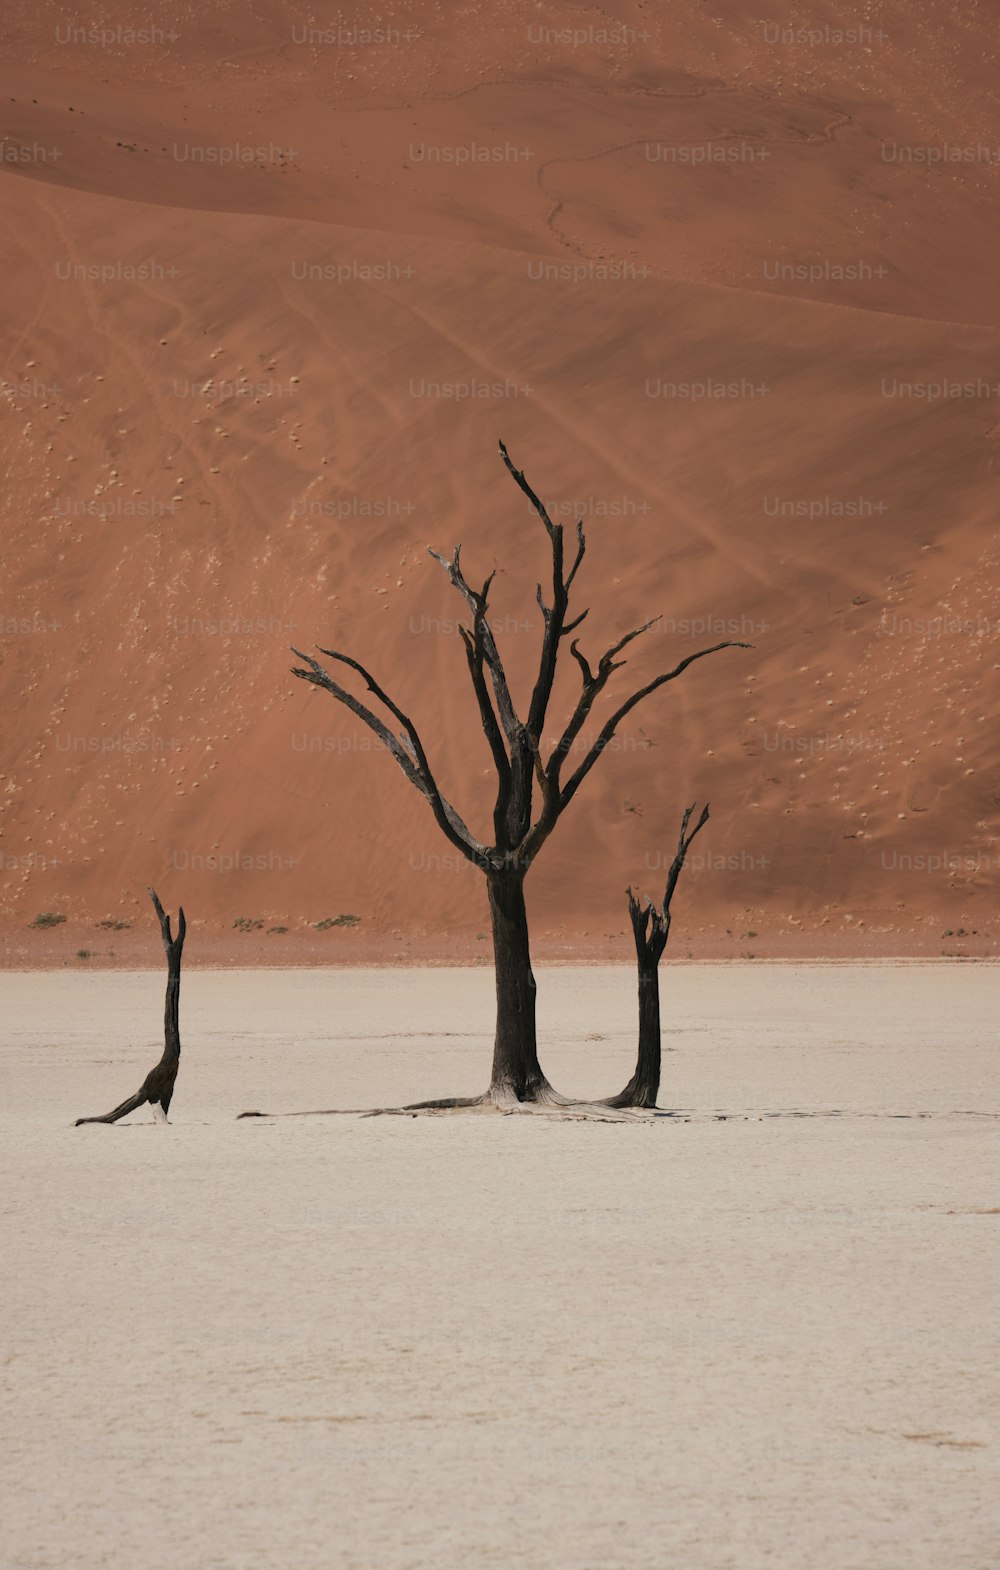 Un groupe d’arbres morts au milieu d’un désert